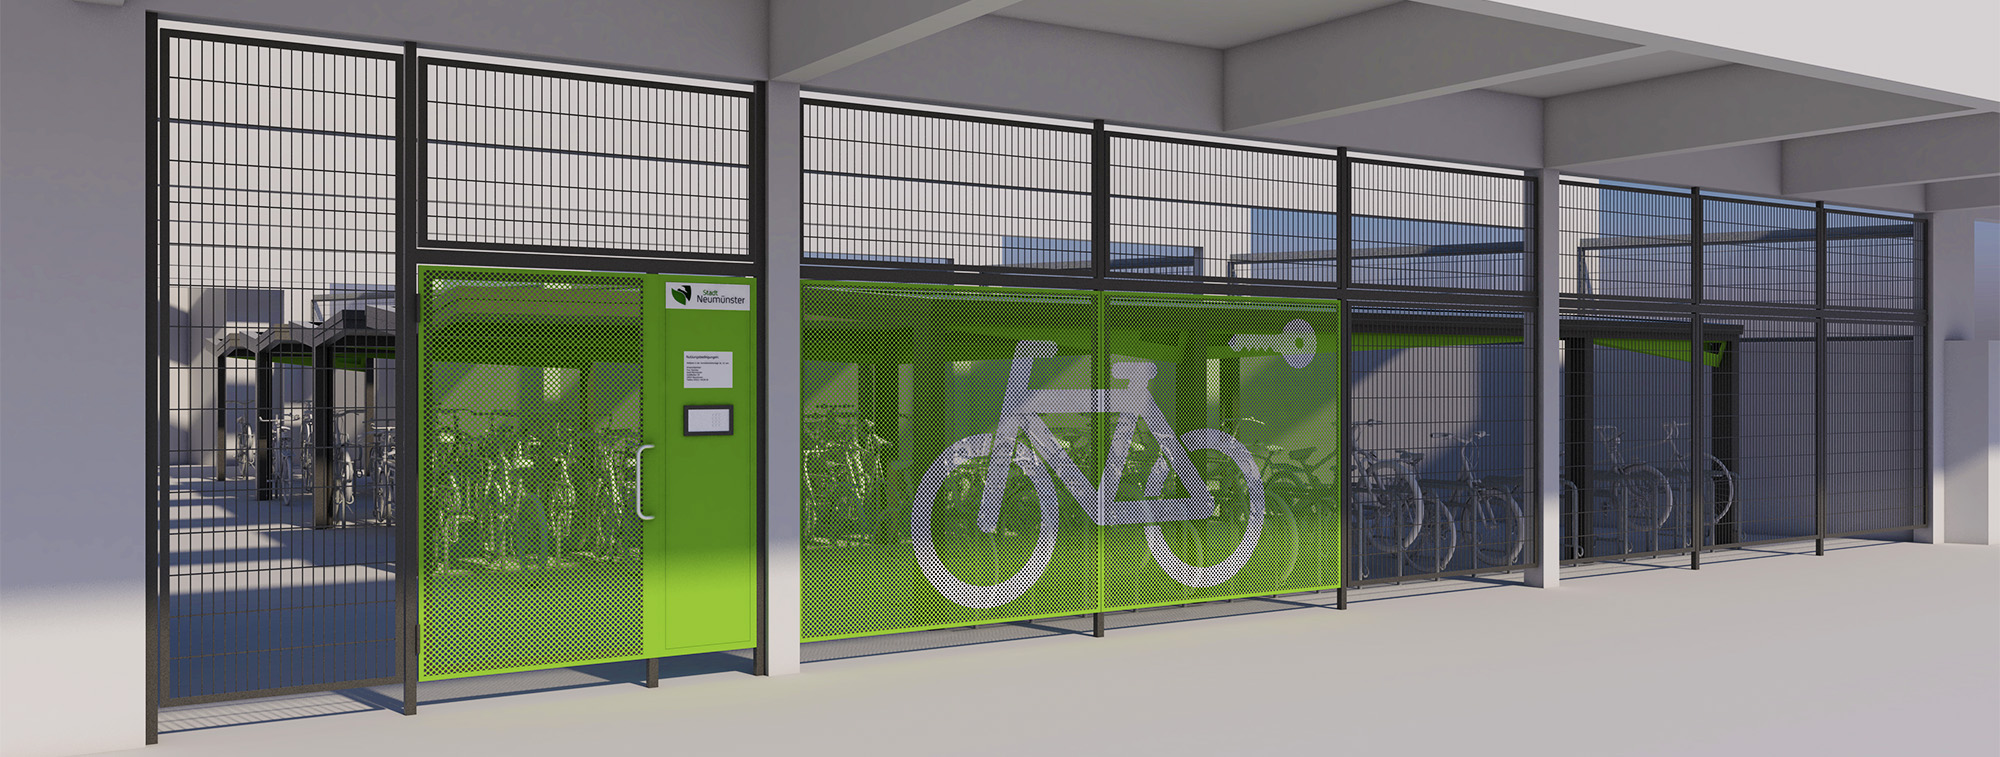 Hier können Fahrräder gesichert abgestellt werden: Sammelschließanlage mit neuer Zaun- und Türanlage (Visualisierung)